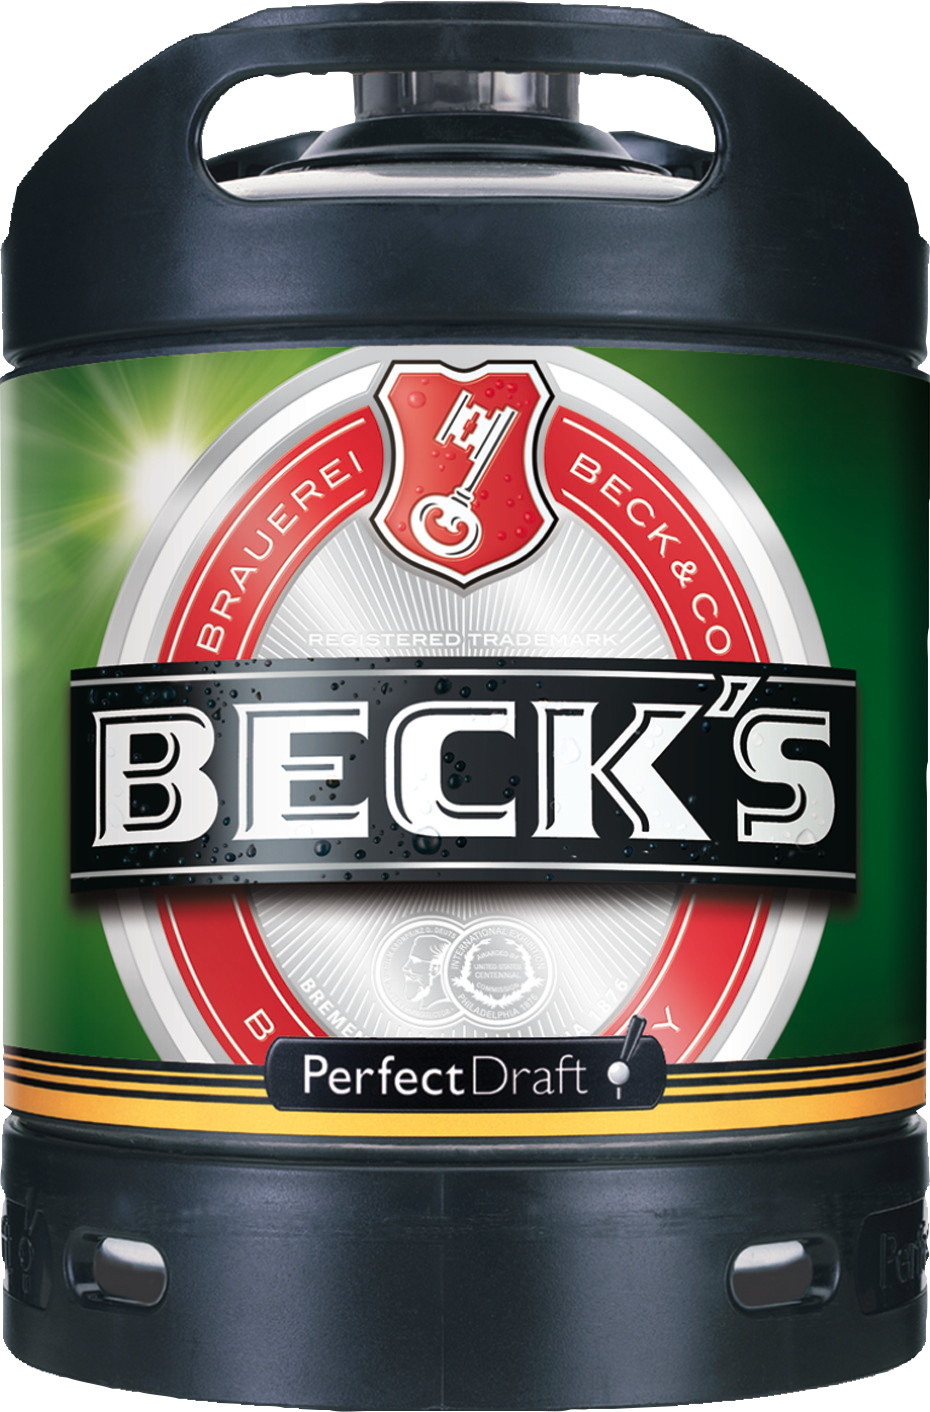 Beck's Pils Perfect Draft 6.00